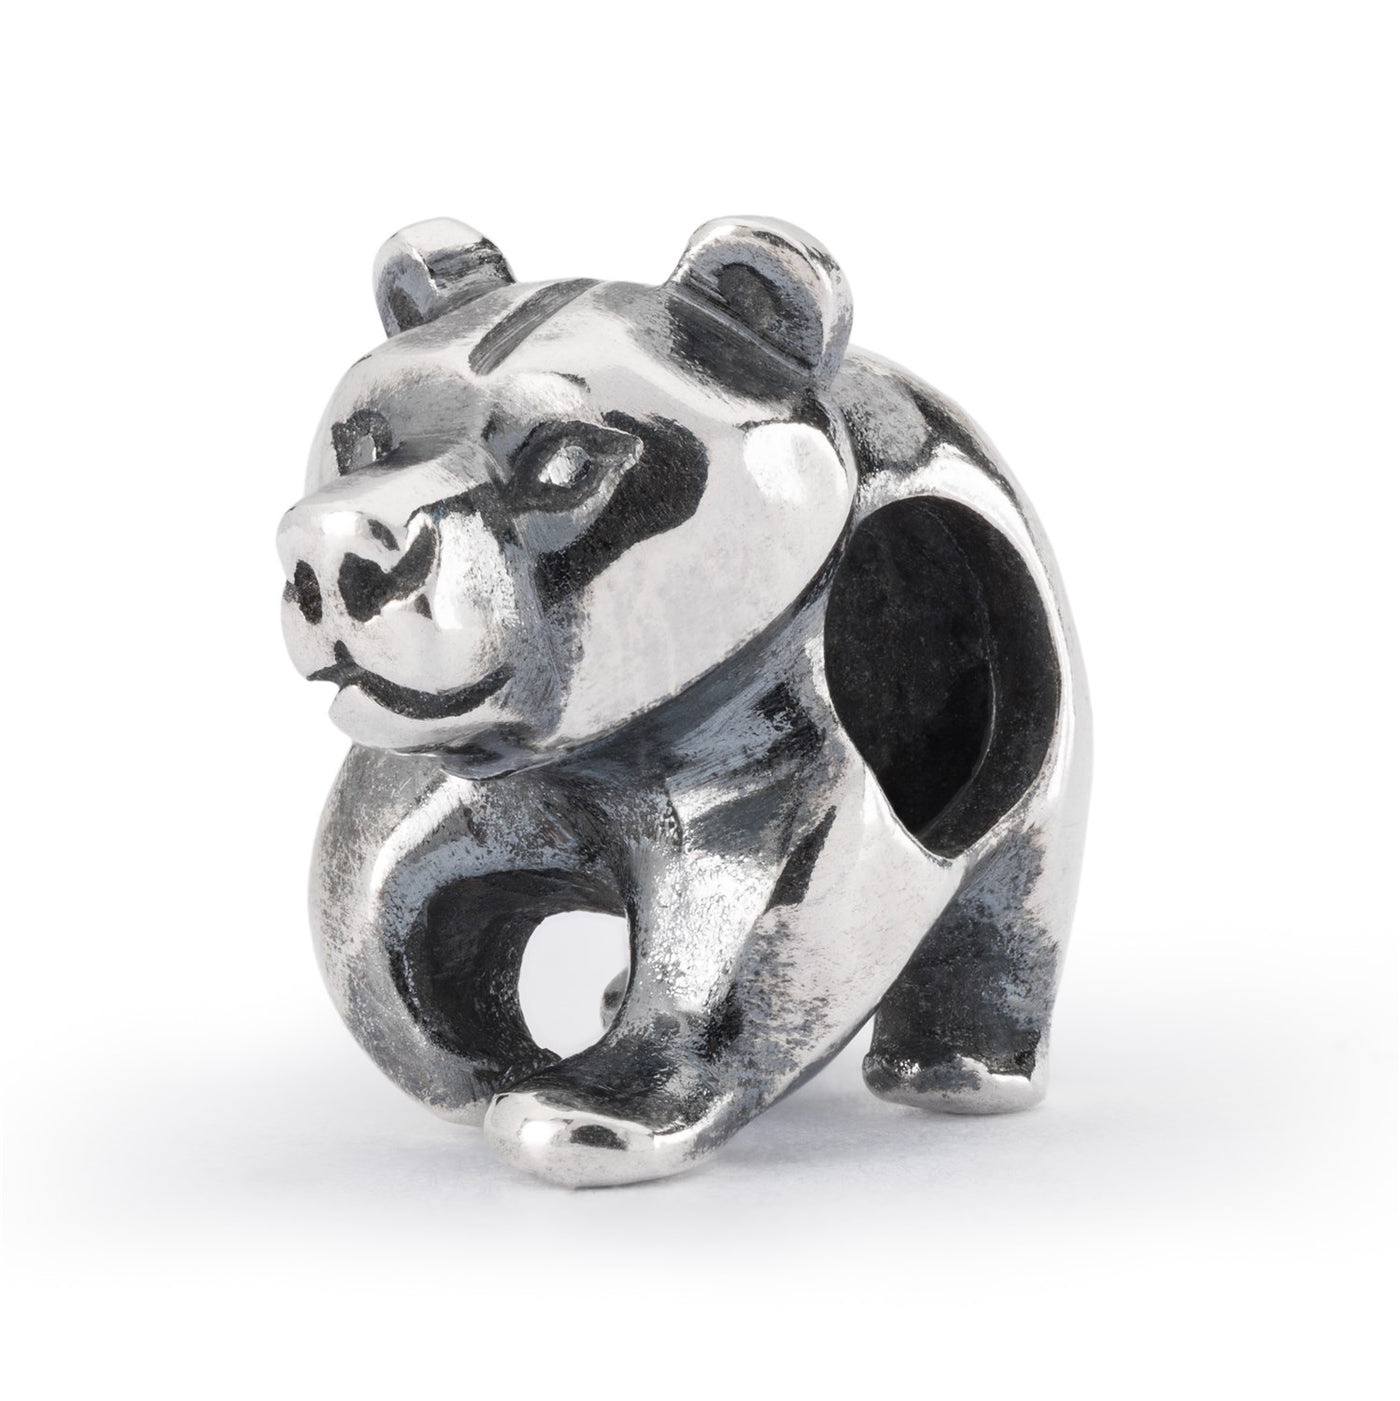 A charming silver bead featuring a cute teddy bear design.